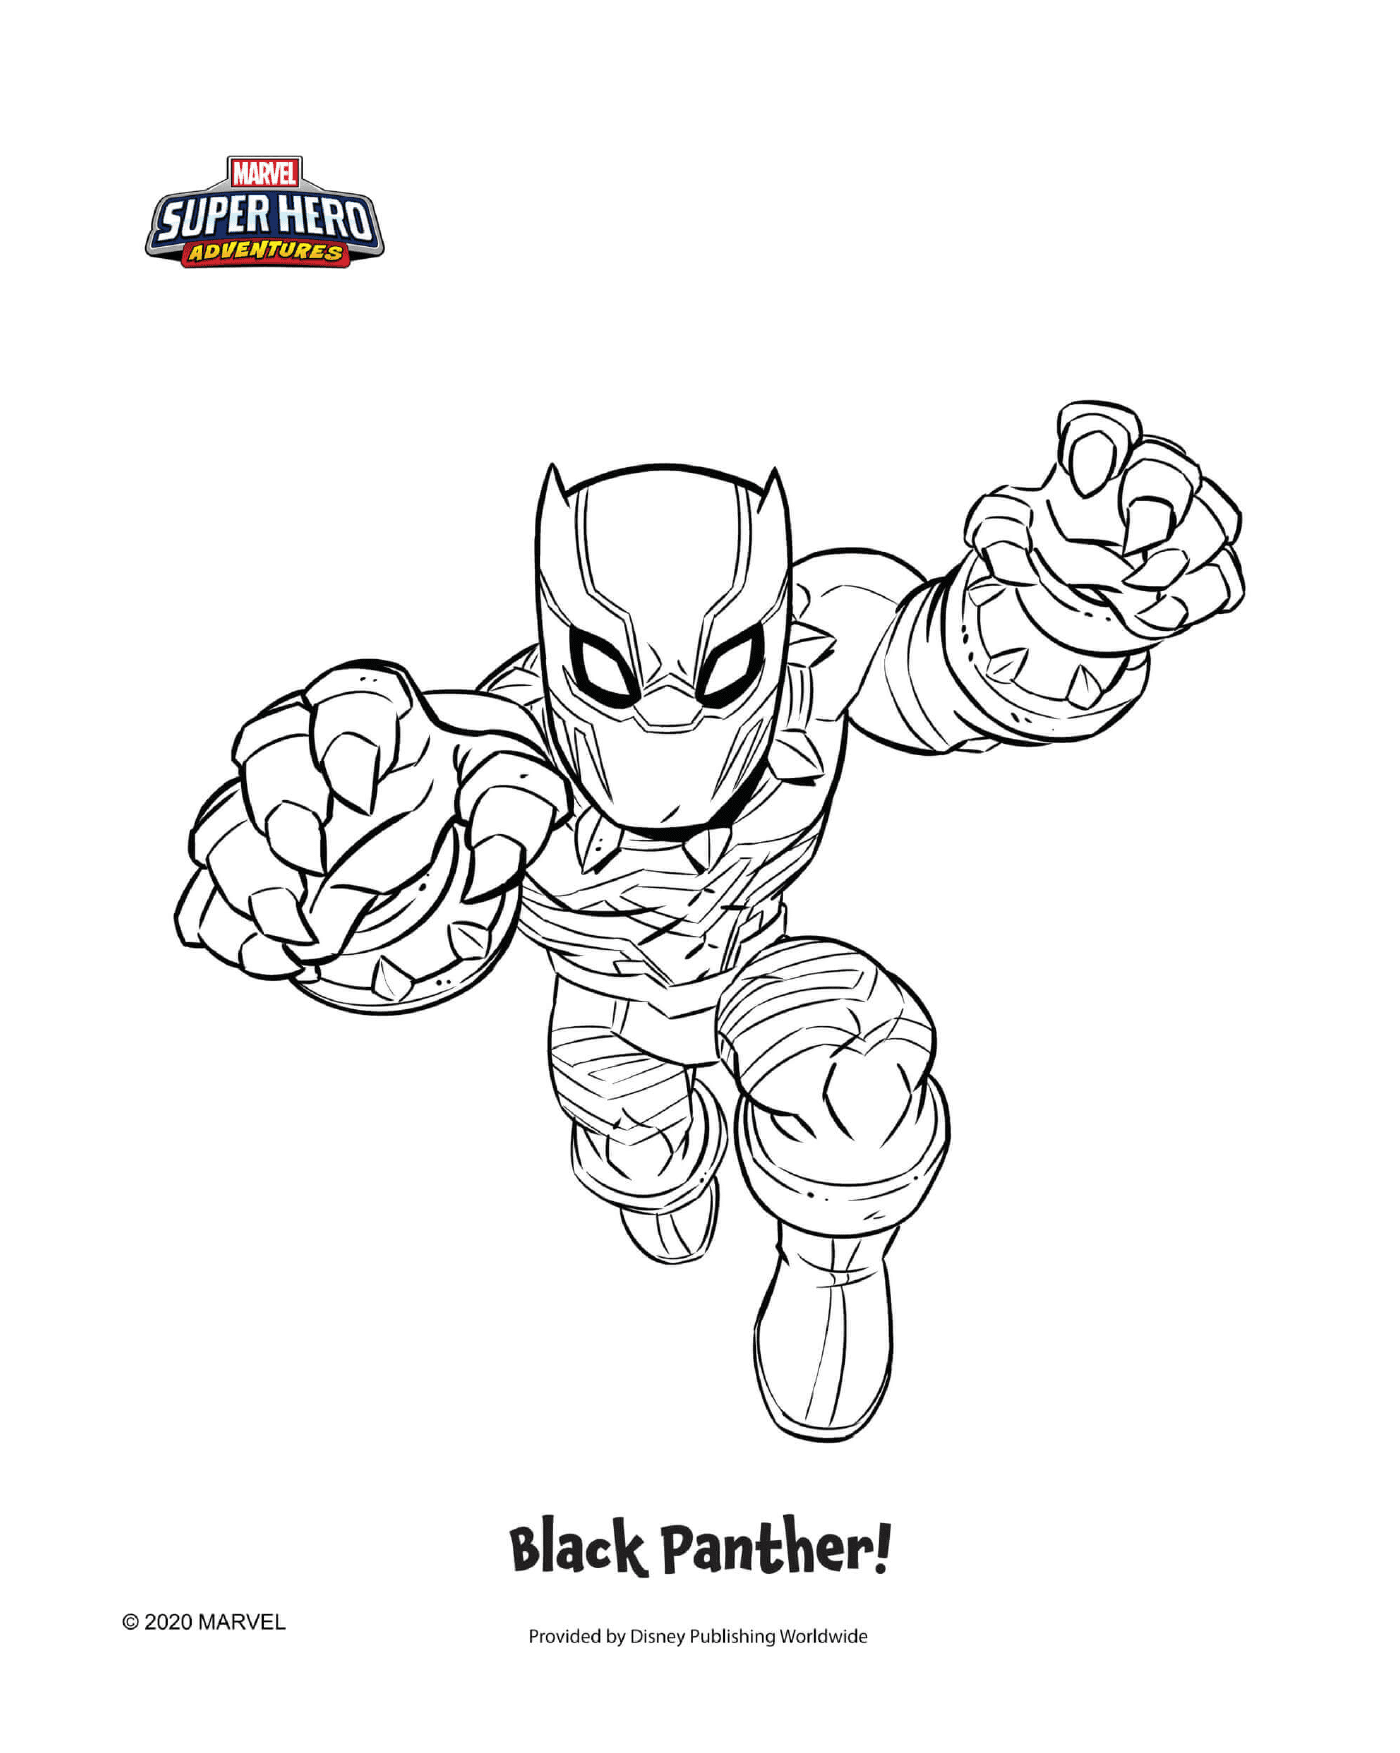   Black Panther, un super-héros 